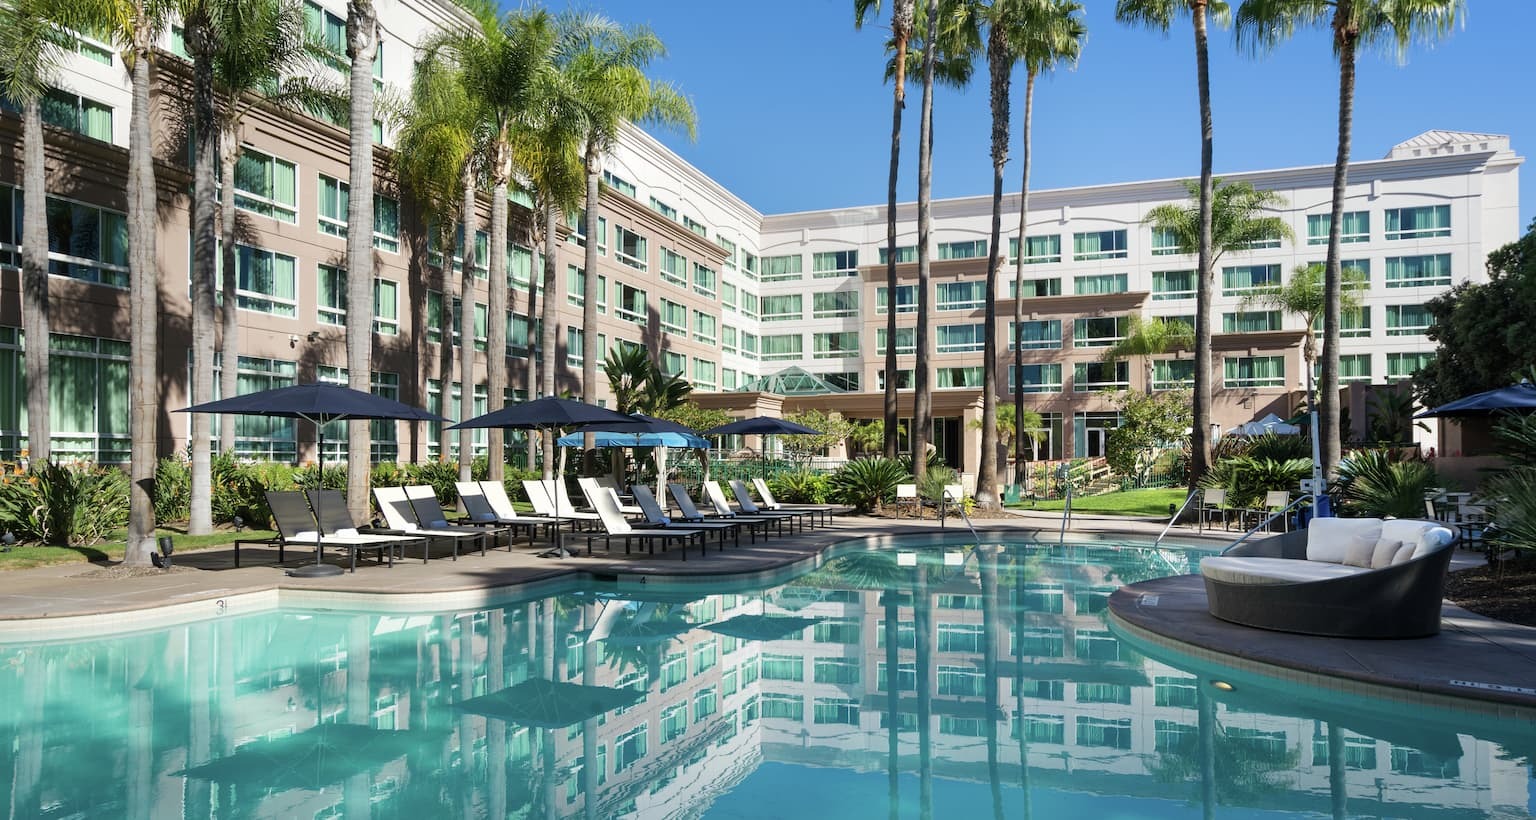 Photo of DoubleTree by Hilton Hotel San Diego - Del Mar, San Diego, CA